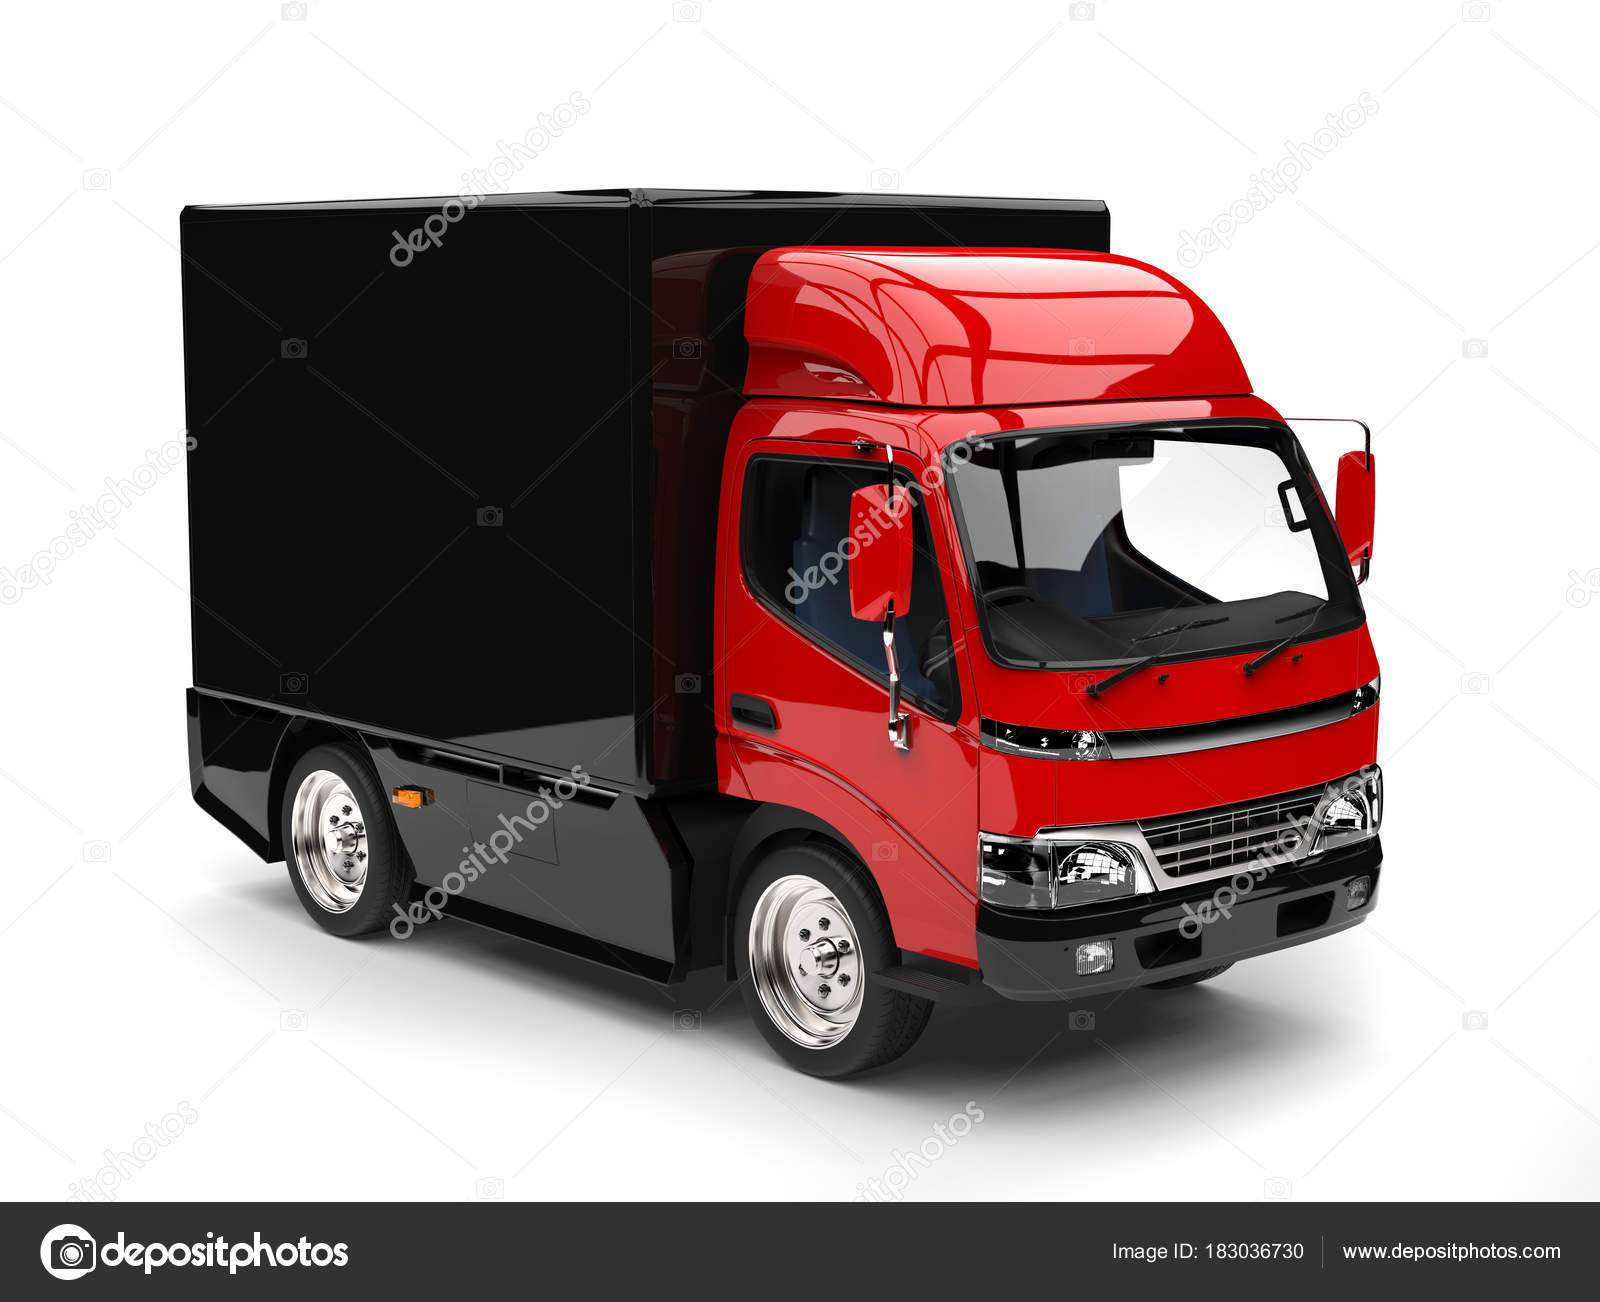 大型トラック写真素材 ロイヤリティフリー大型トラック画像 Depositphotos